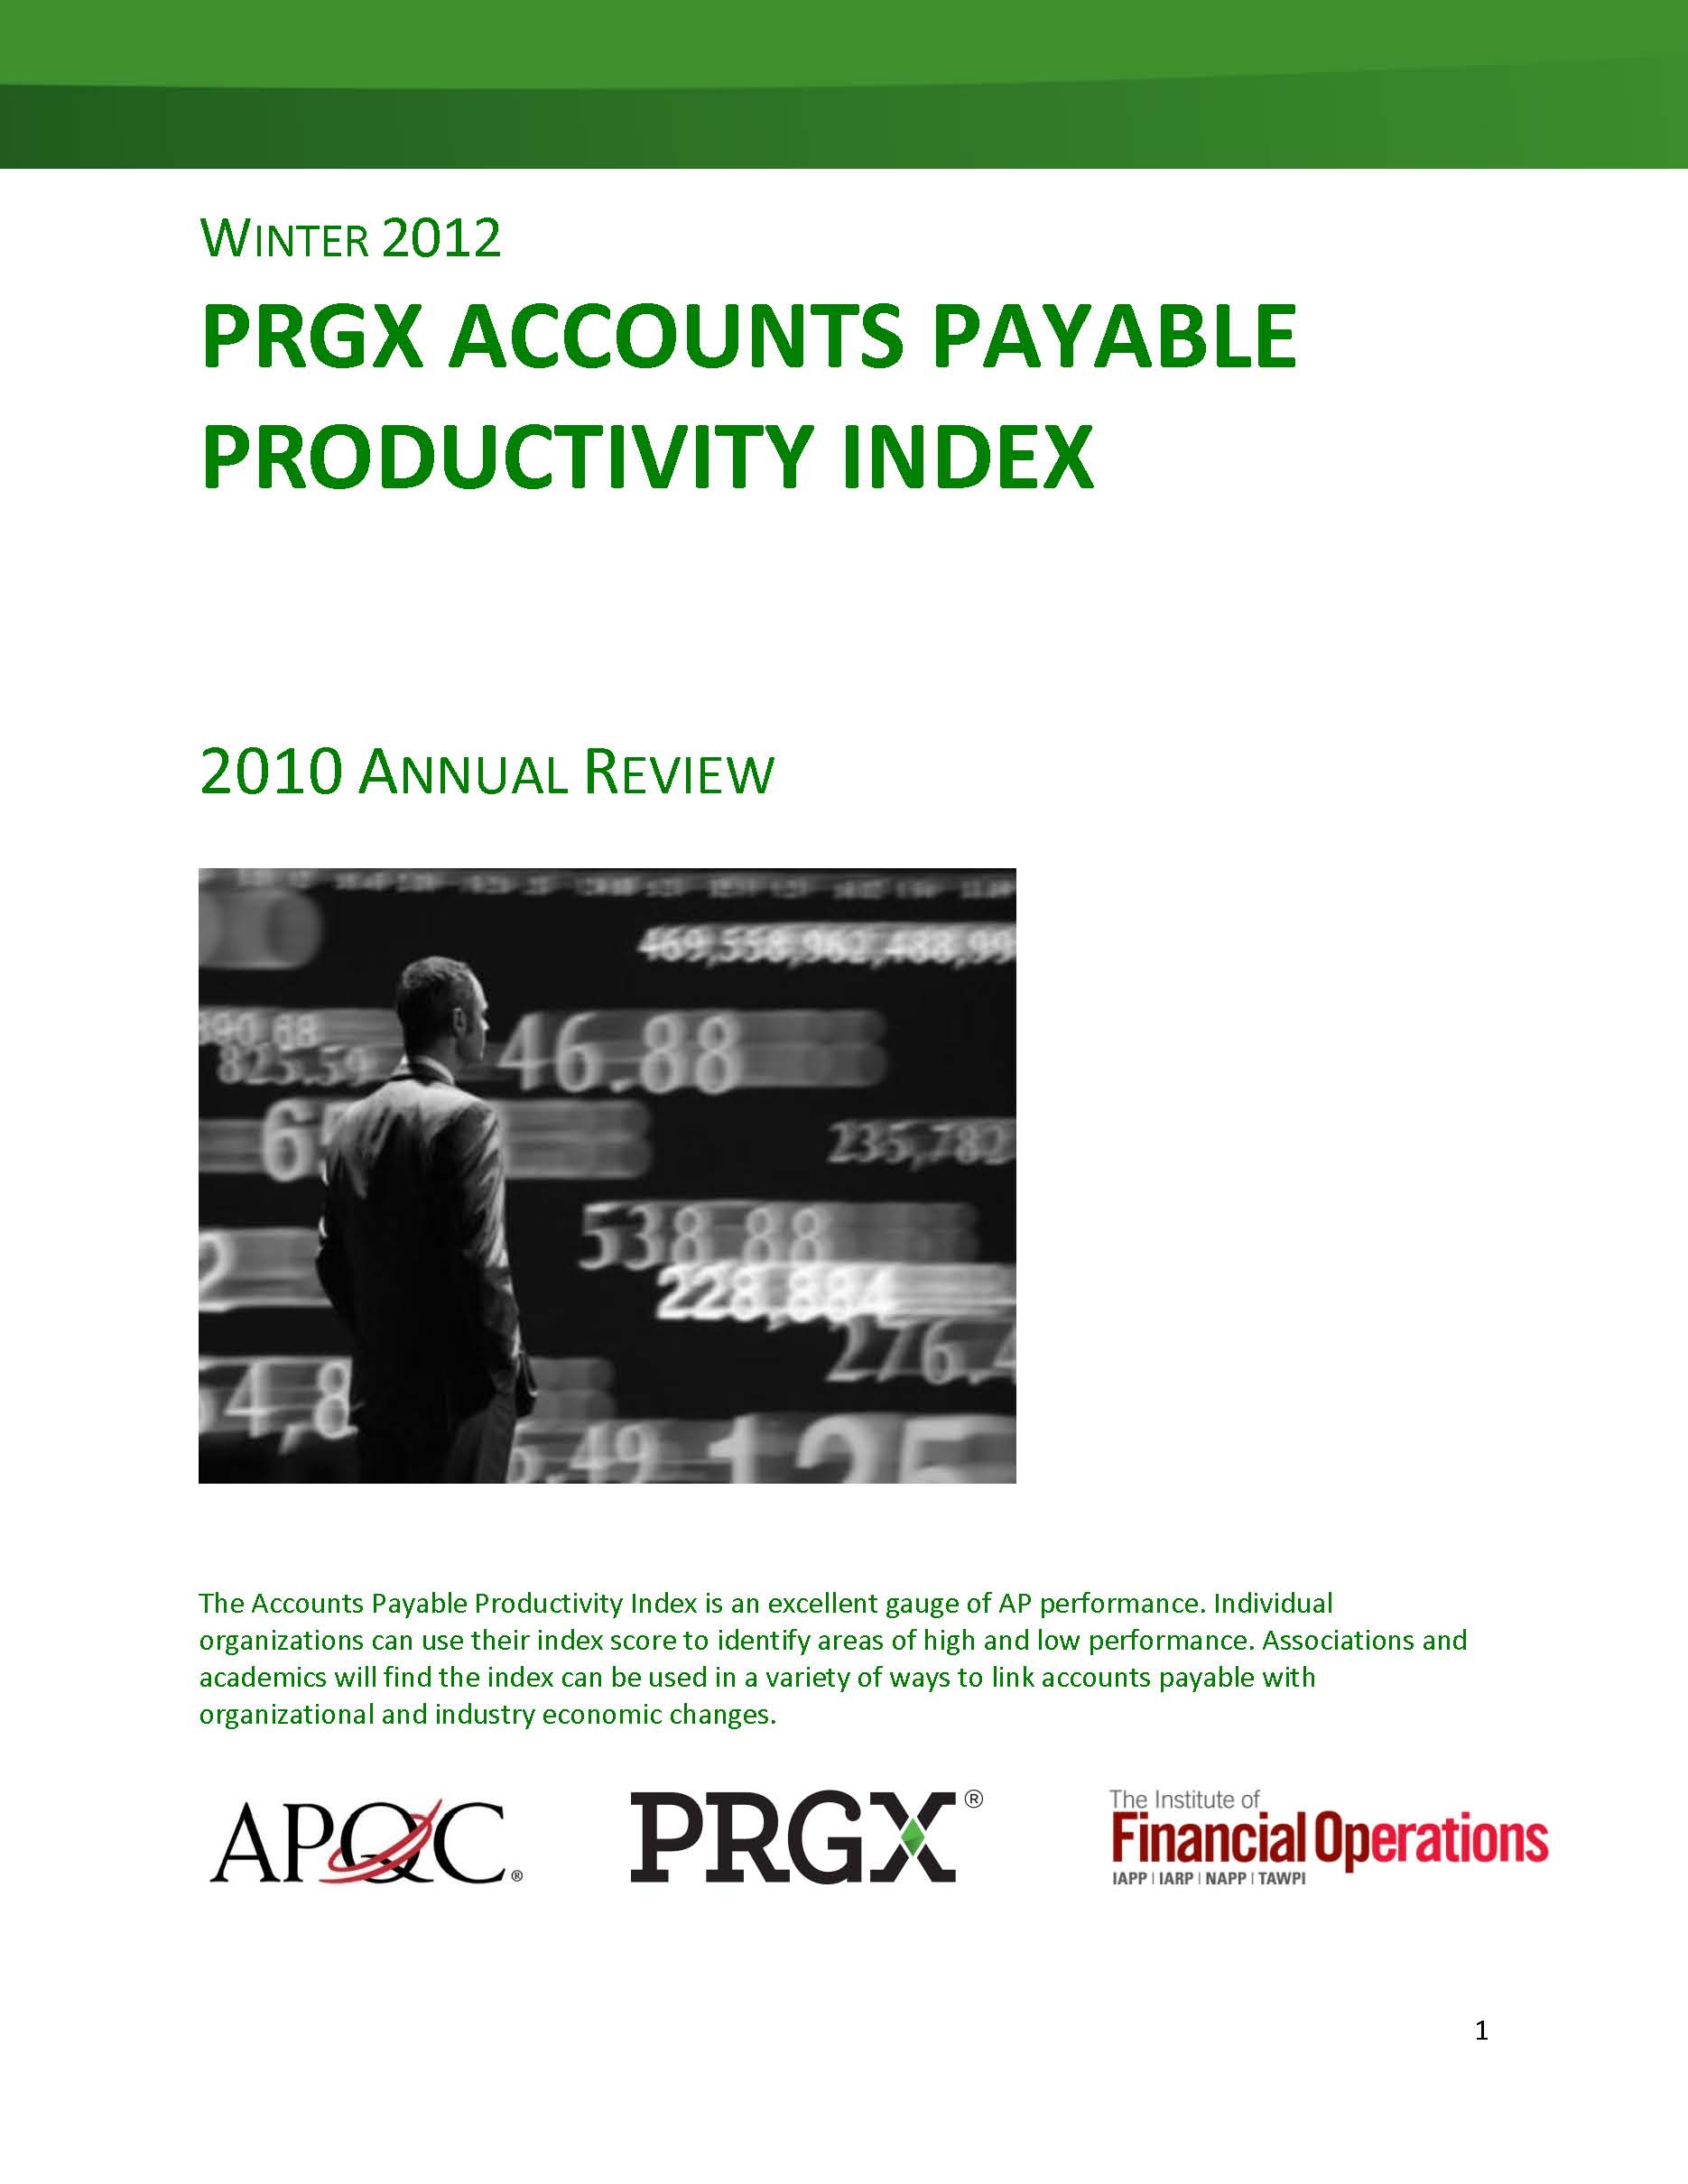 PRGX AP Productivity Index (2012)